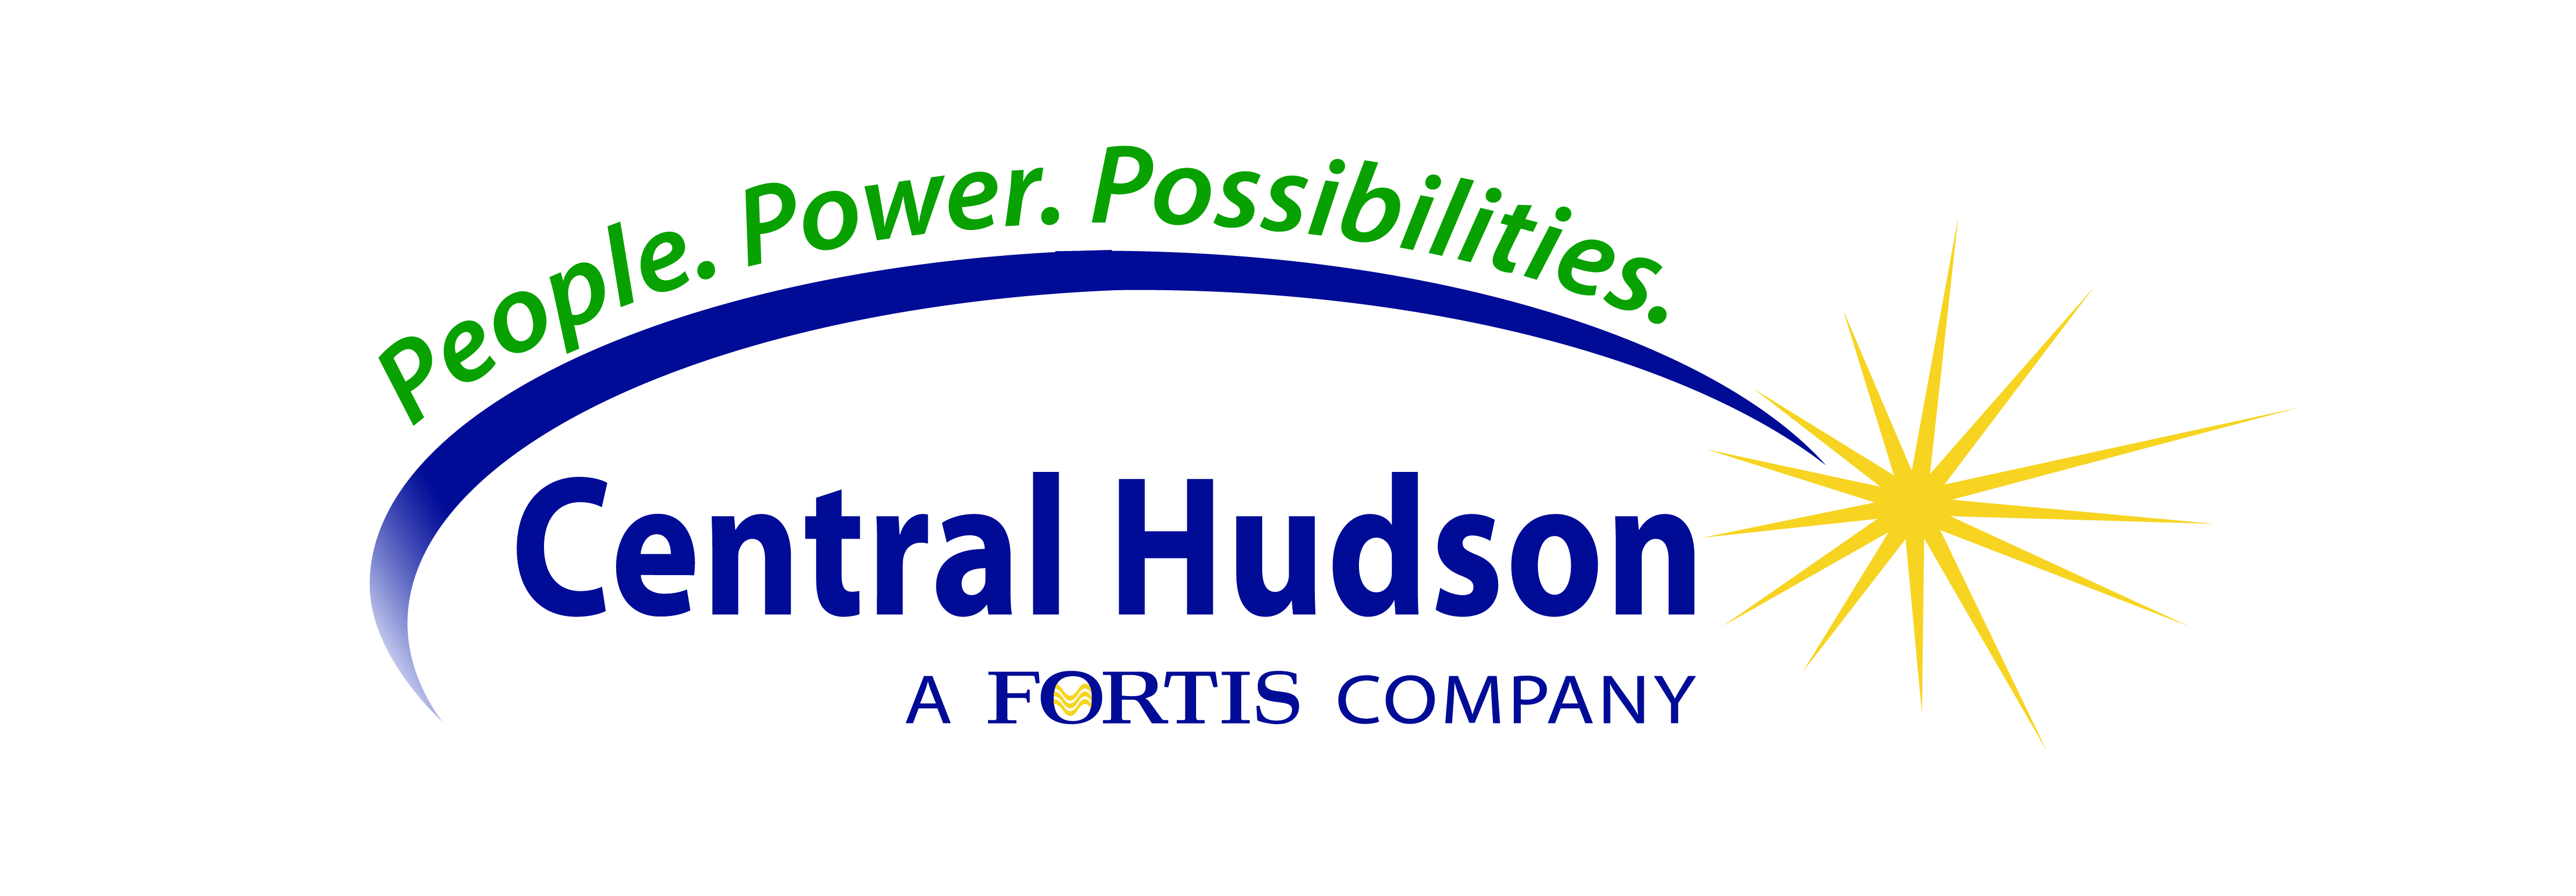 Central Hudson Sightline Incentive Icf Energy InstantRebate Web